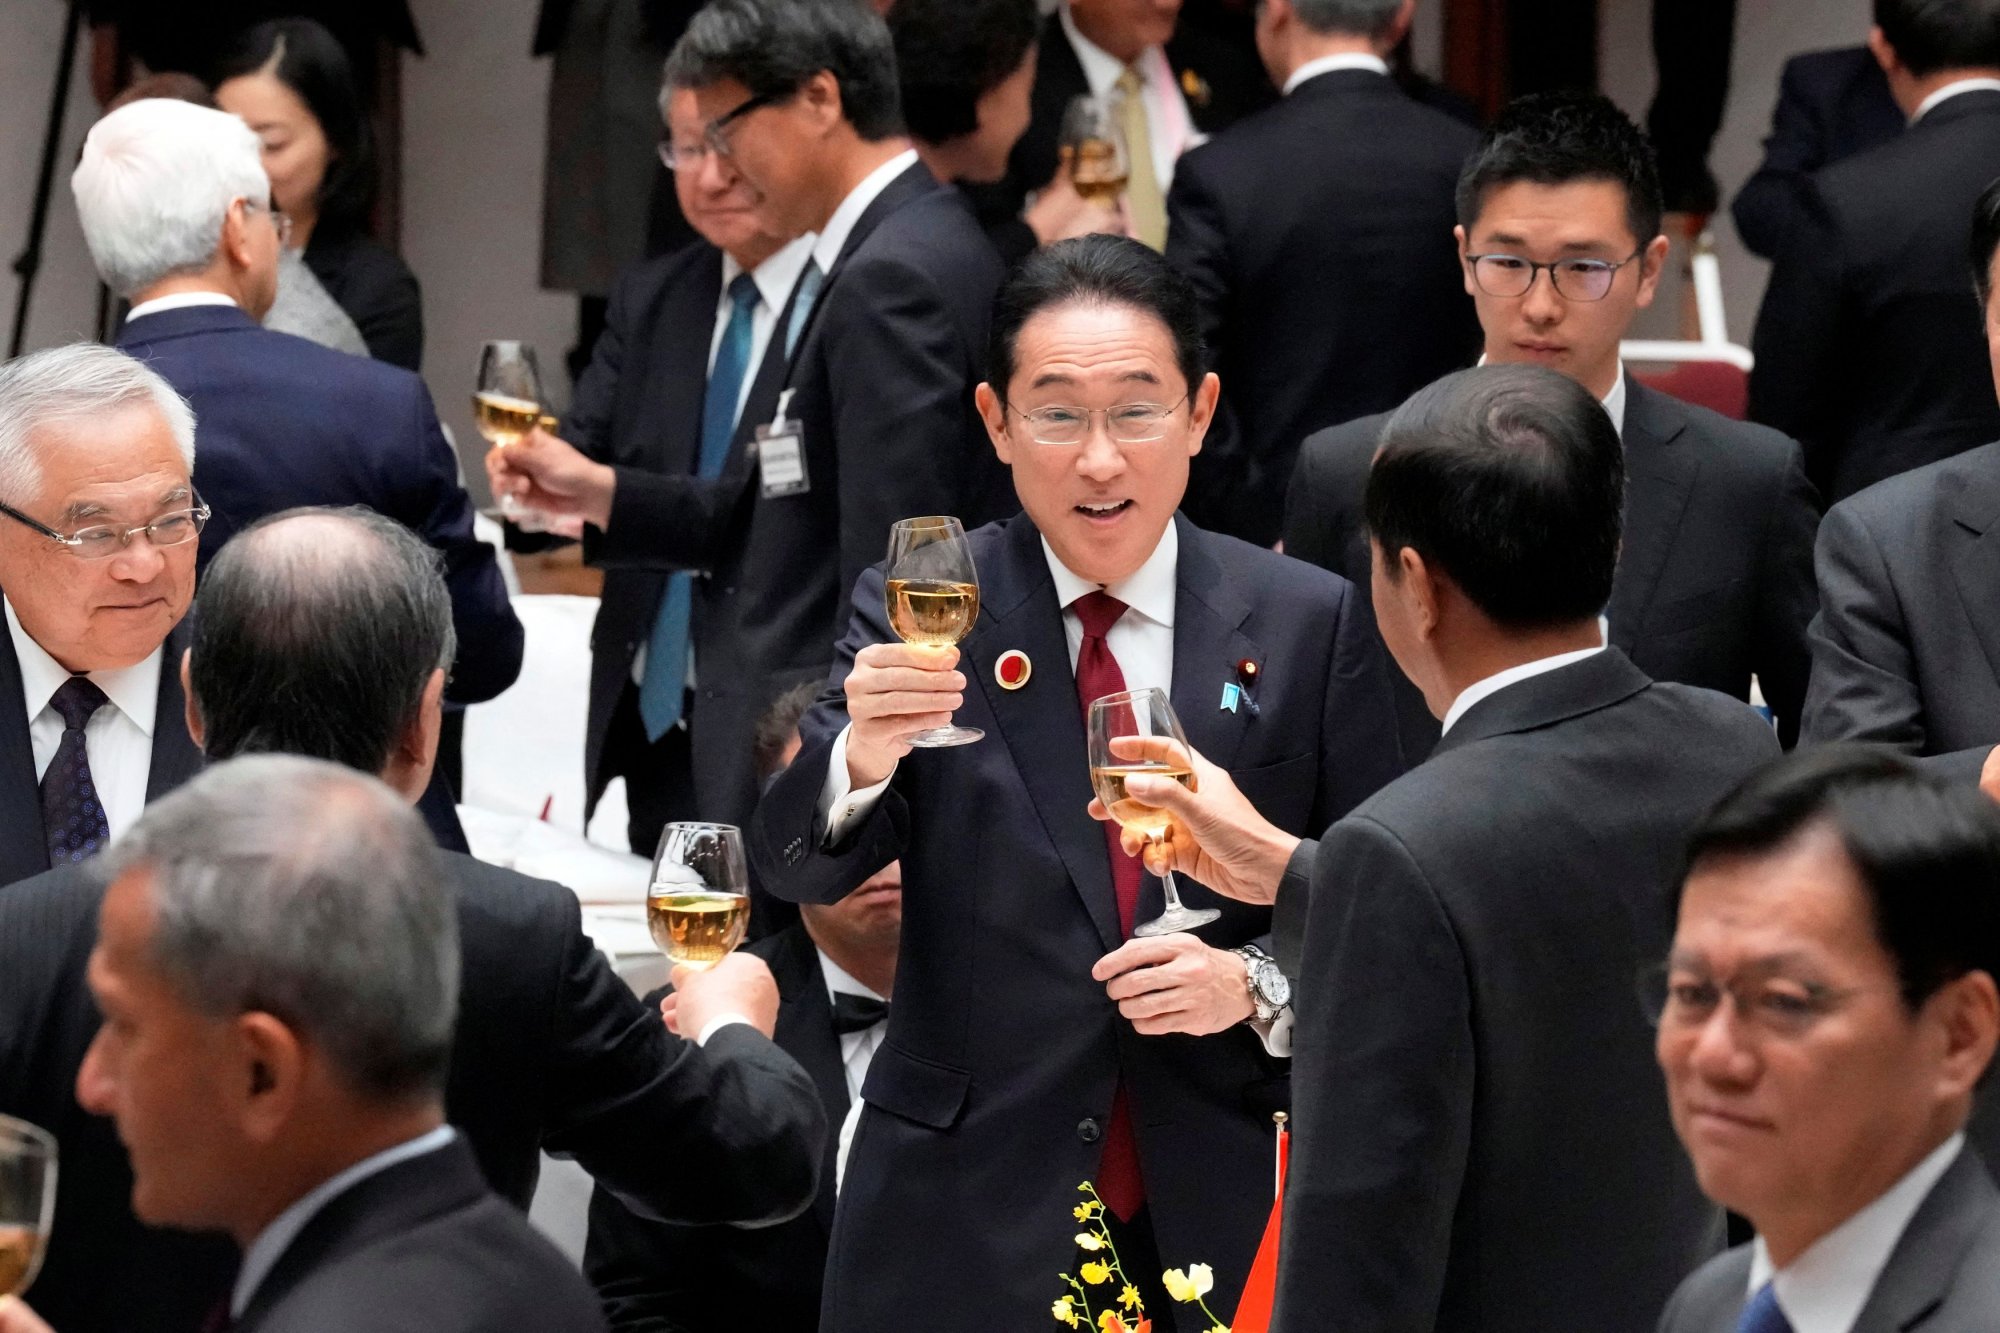 Ιαπωνία: Έφοδος εισαγγελέων στον κυβερνητικό συνασπισμό - Εννιά παραιτήσεις υπουργών για μίζες